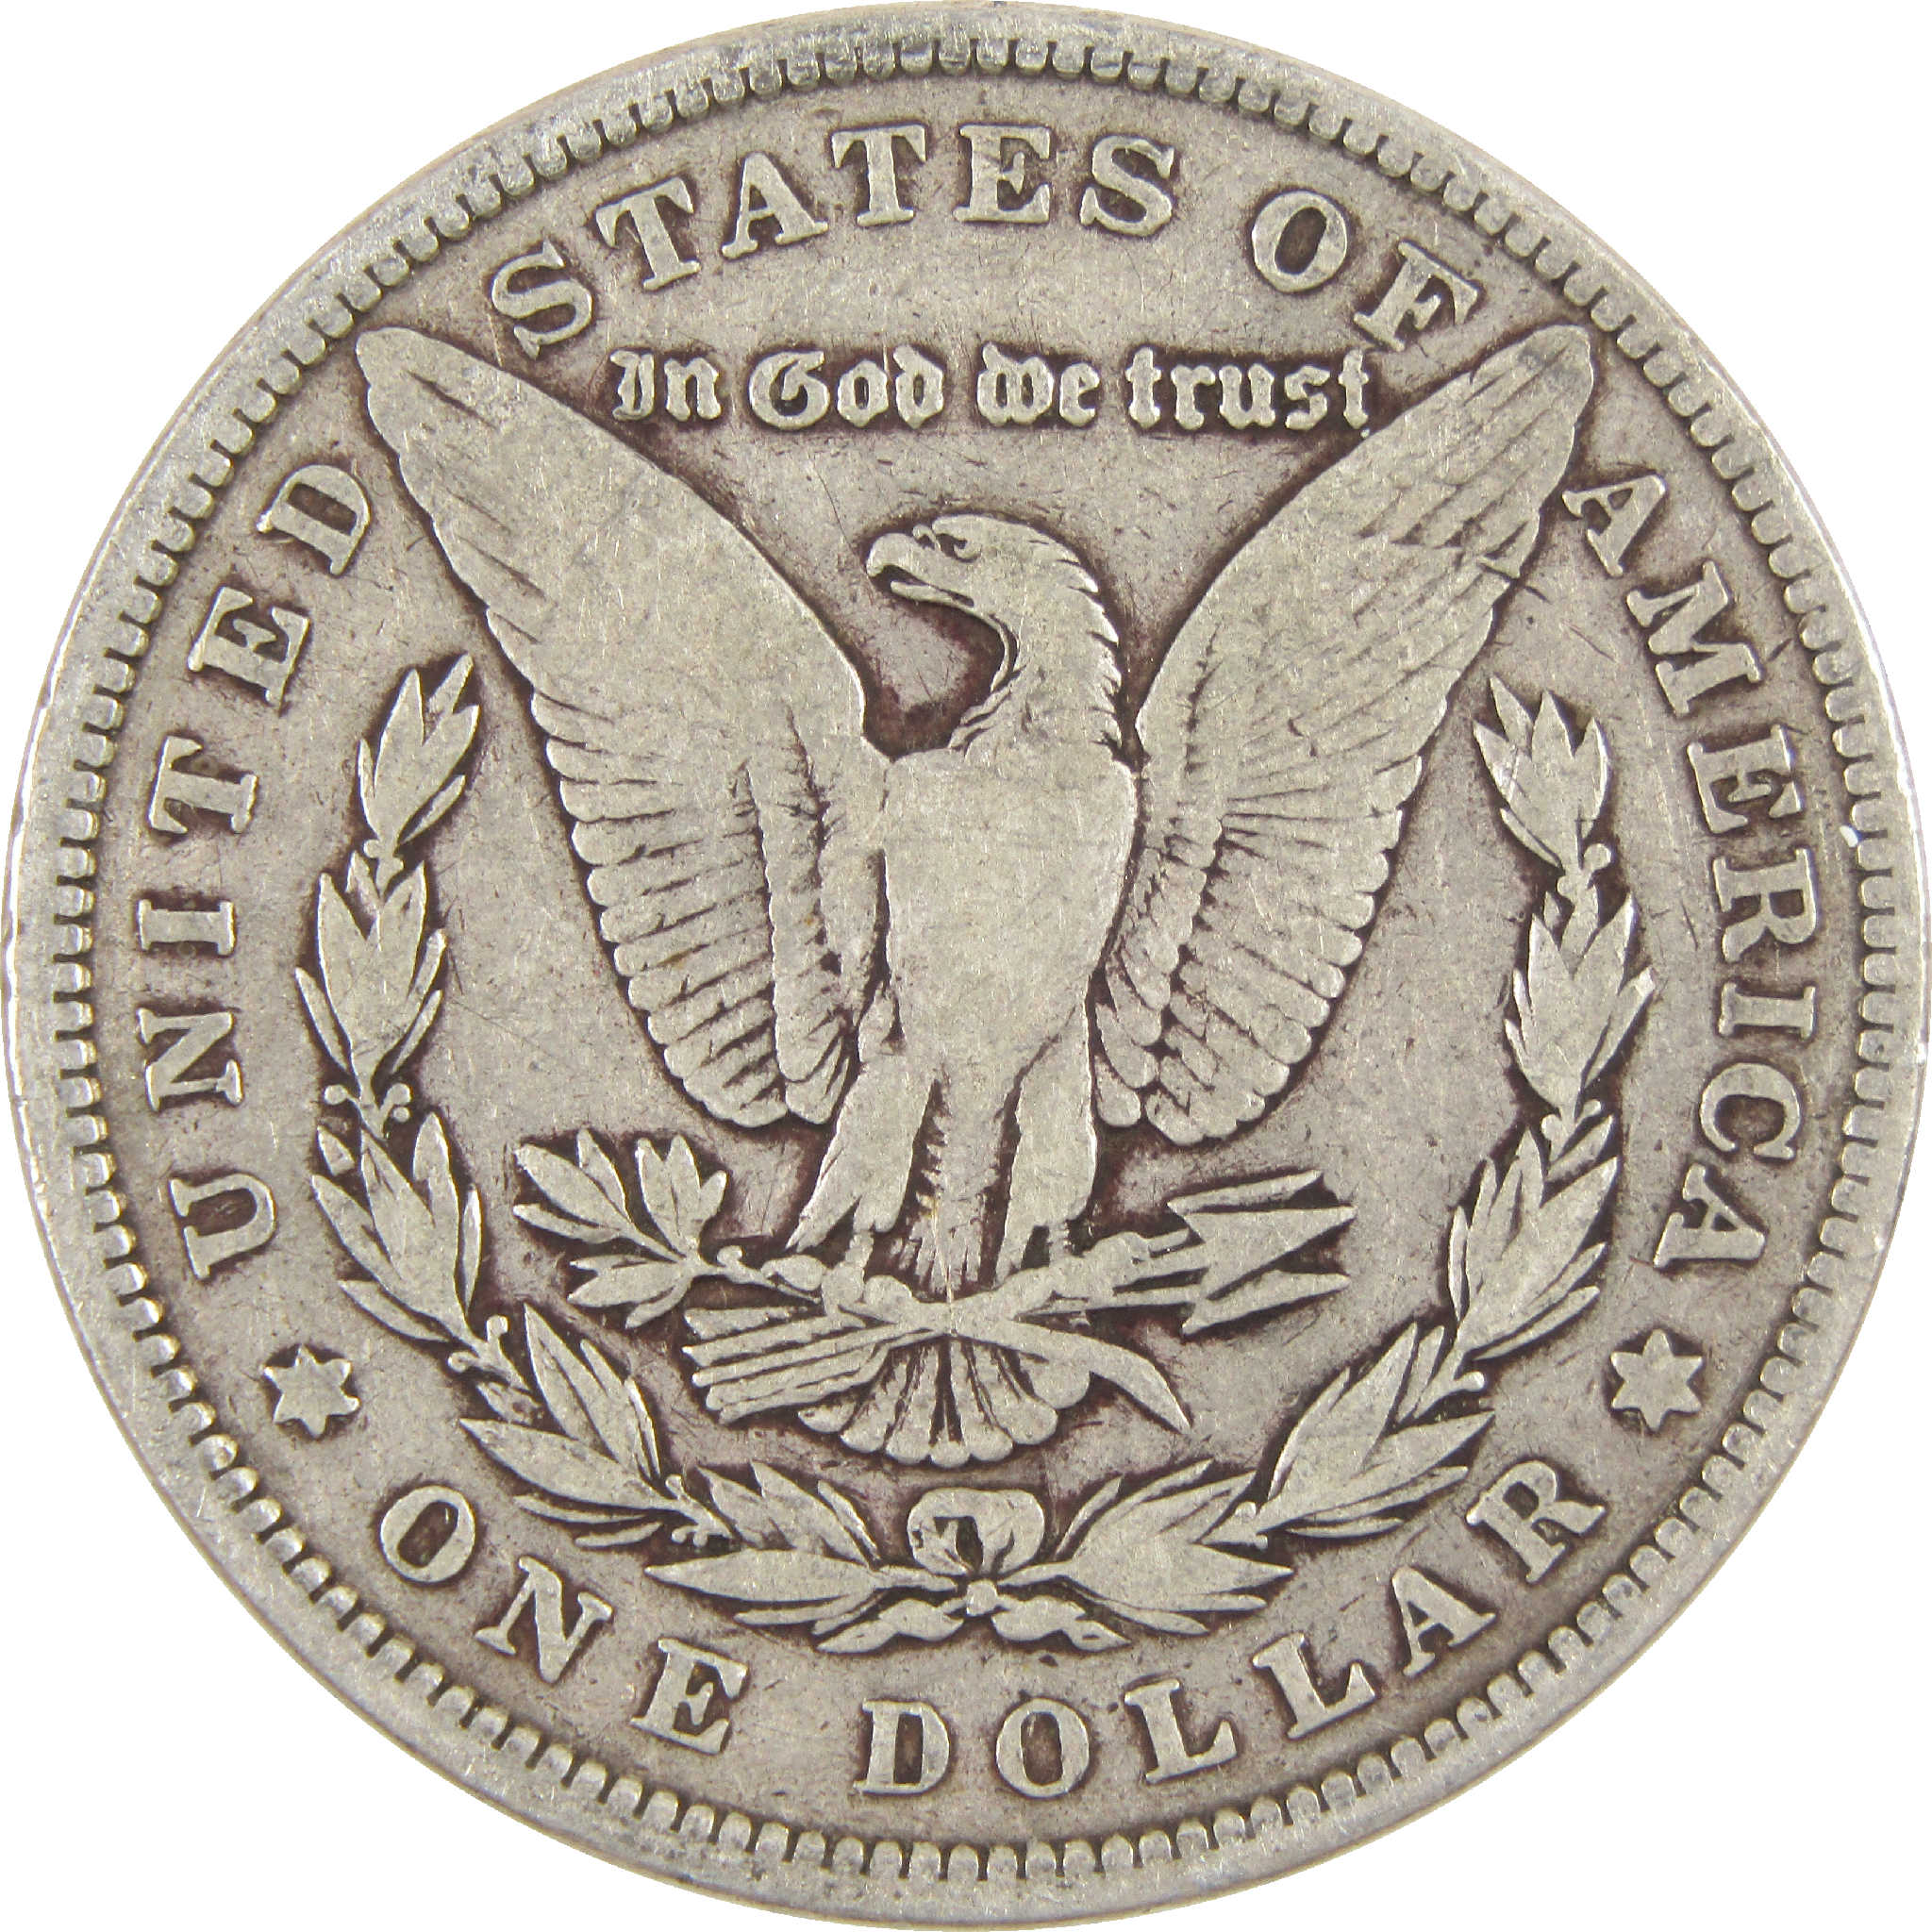 1896 Morgan Dollar VG Very Good Silver $1 Coin - Morgan coin - Morgan silver dollar - Morgan silver dollar for sale - Profile Coins &amp; Collectibles